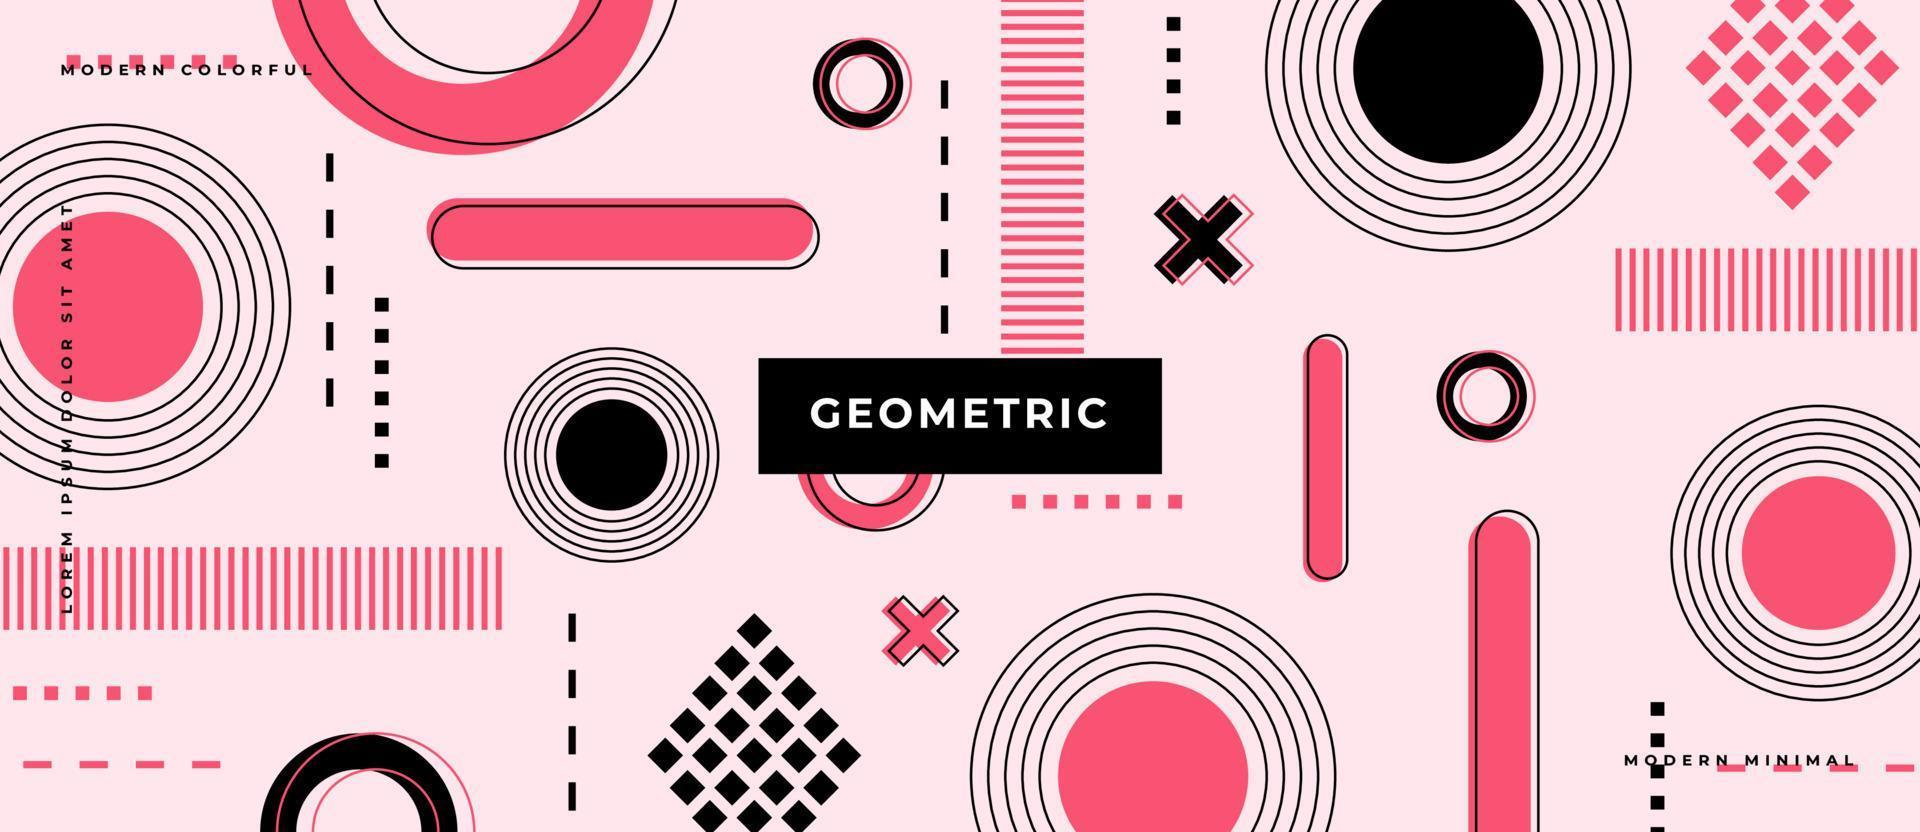 formas de círculo geométrico de Memphis, línea, composición de puntos. elementos retro, ilustración de fondo de patrón geométrico. vector